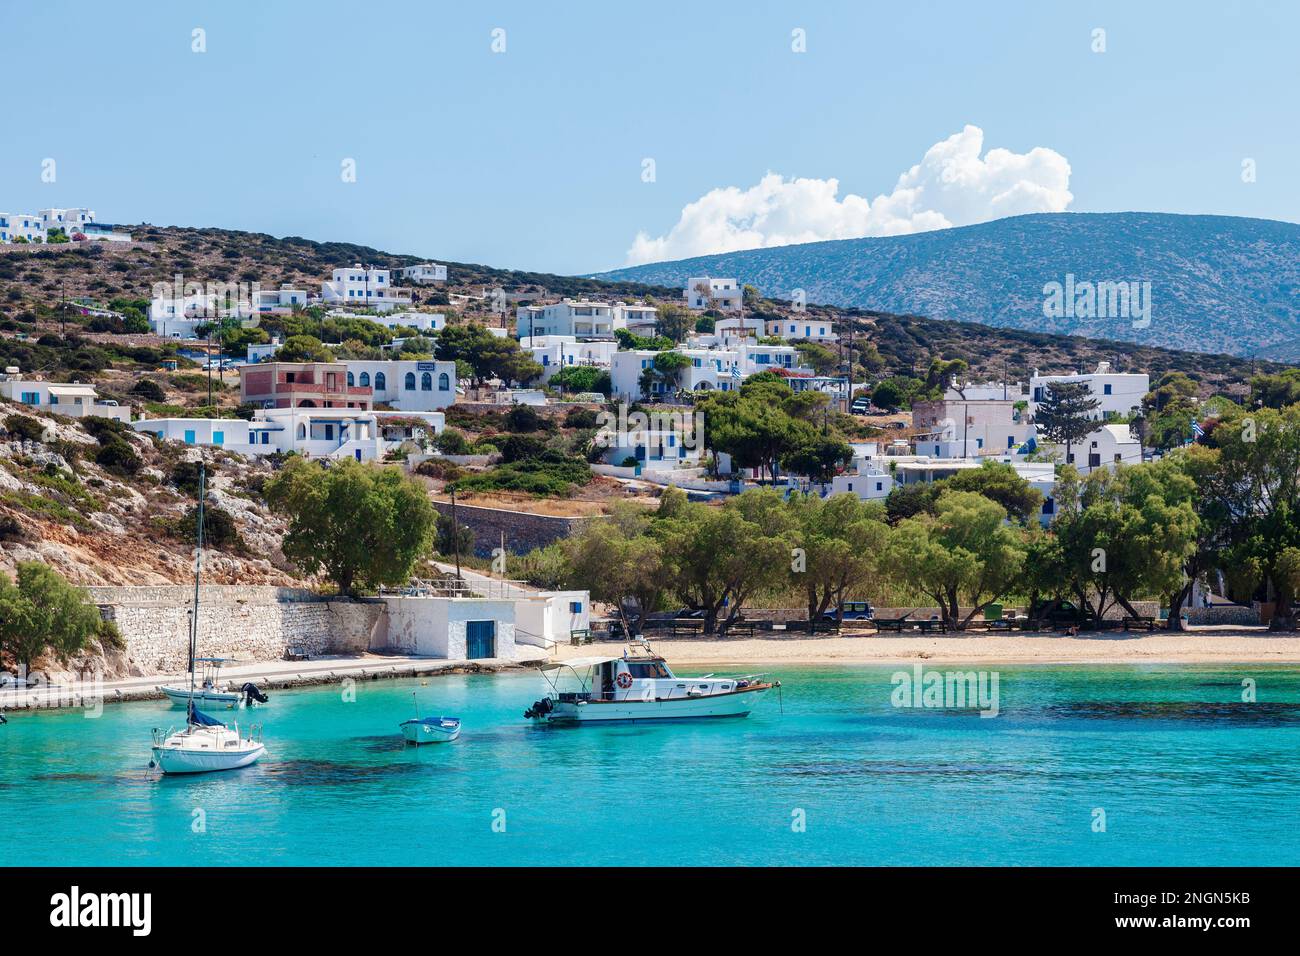 Isola di Iraklia, Grecia. Vista sul porto di Iraklia, una delle isole minori delle Cicladi, vicino all'isola di Naxos, nelle isole Cicladi del Mar Egeo. Foto Stock